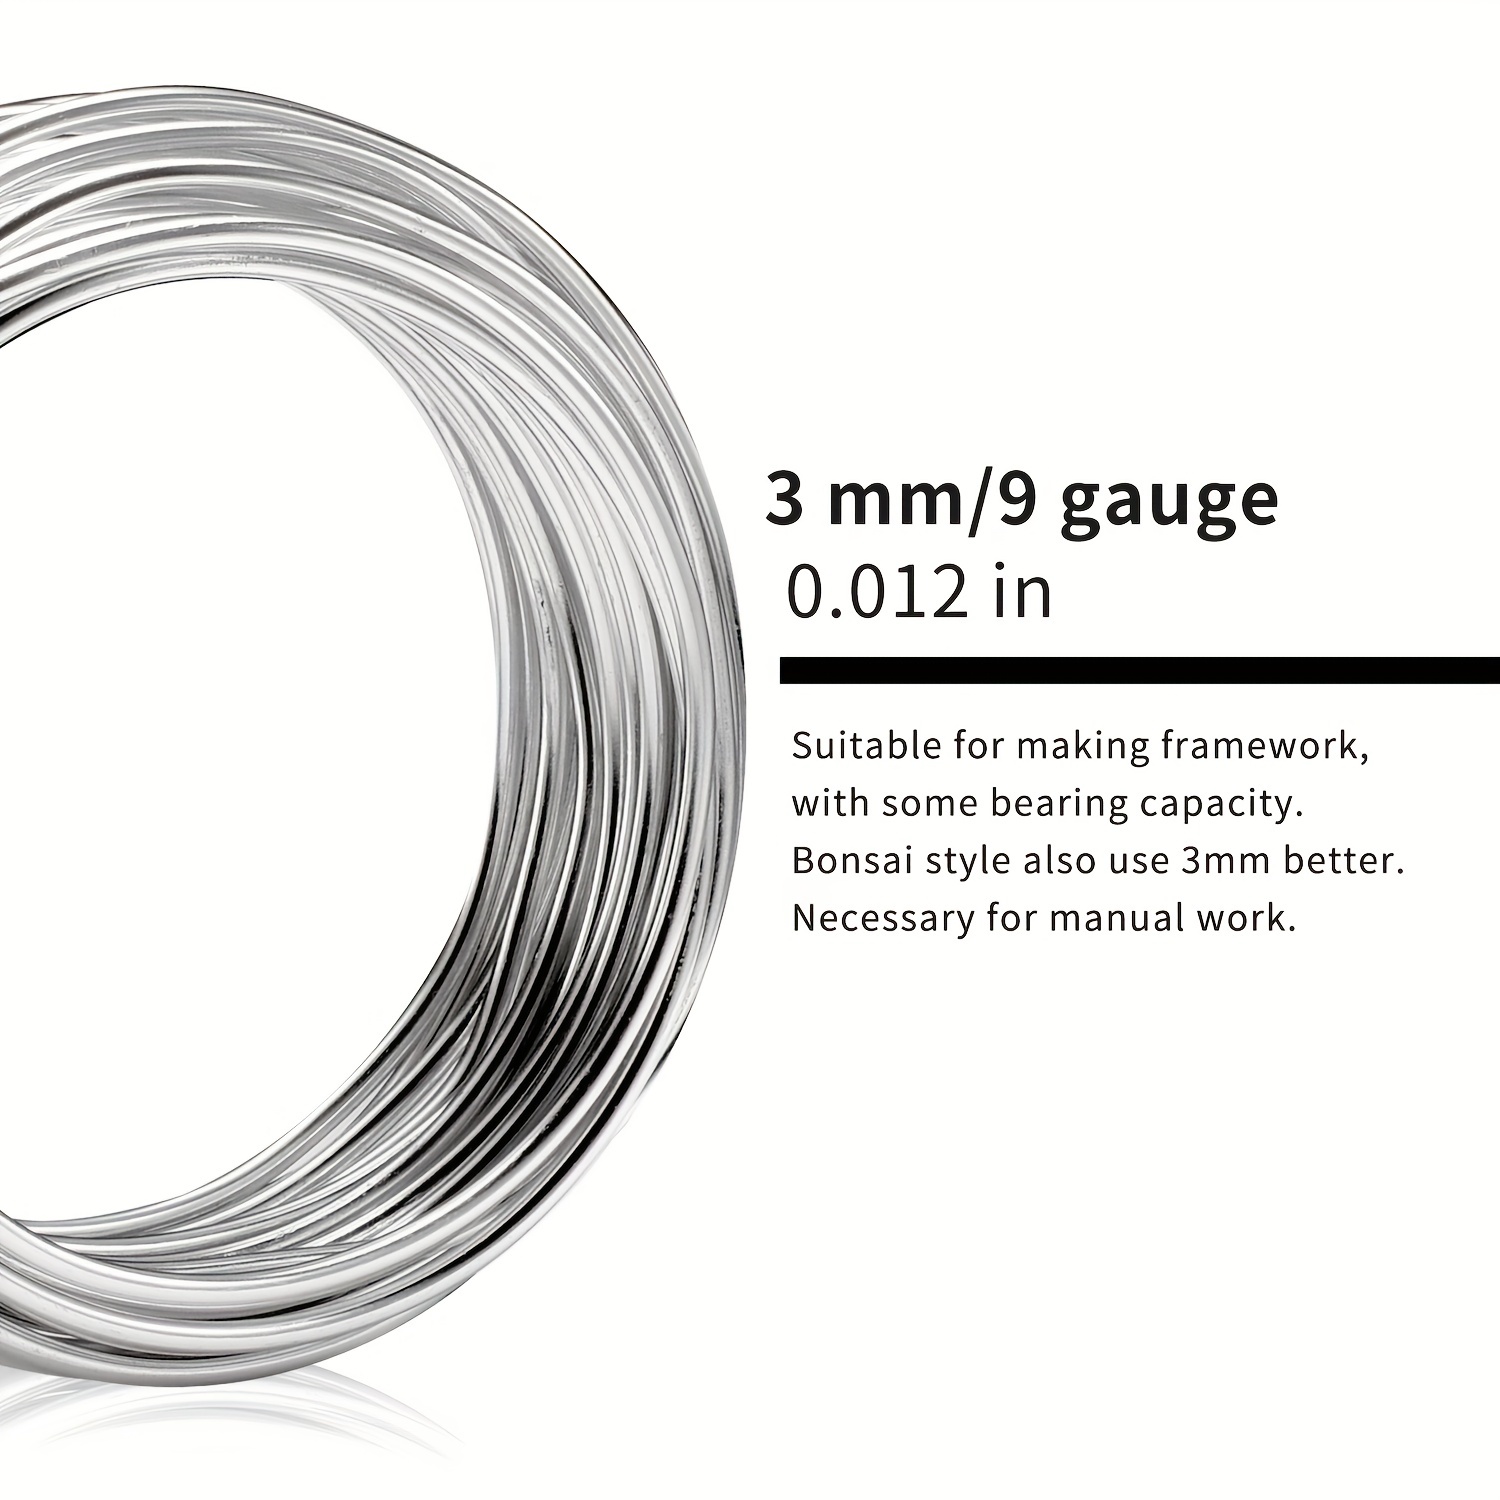 سلك حرفي من الألومنيوم الفضي مقاس 9 مقاس 3.0 مم 32.8 قدمًا / 10 أمتار سلك حديد التسليح طويل مناسب للحرف اليدوية ذاتية الصنع أسلاك الألمنيوم المؤكسد الأسلاك المعدنية لأسلاك المجوهرات